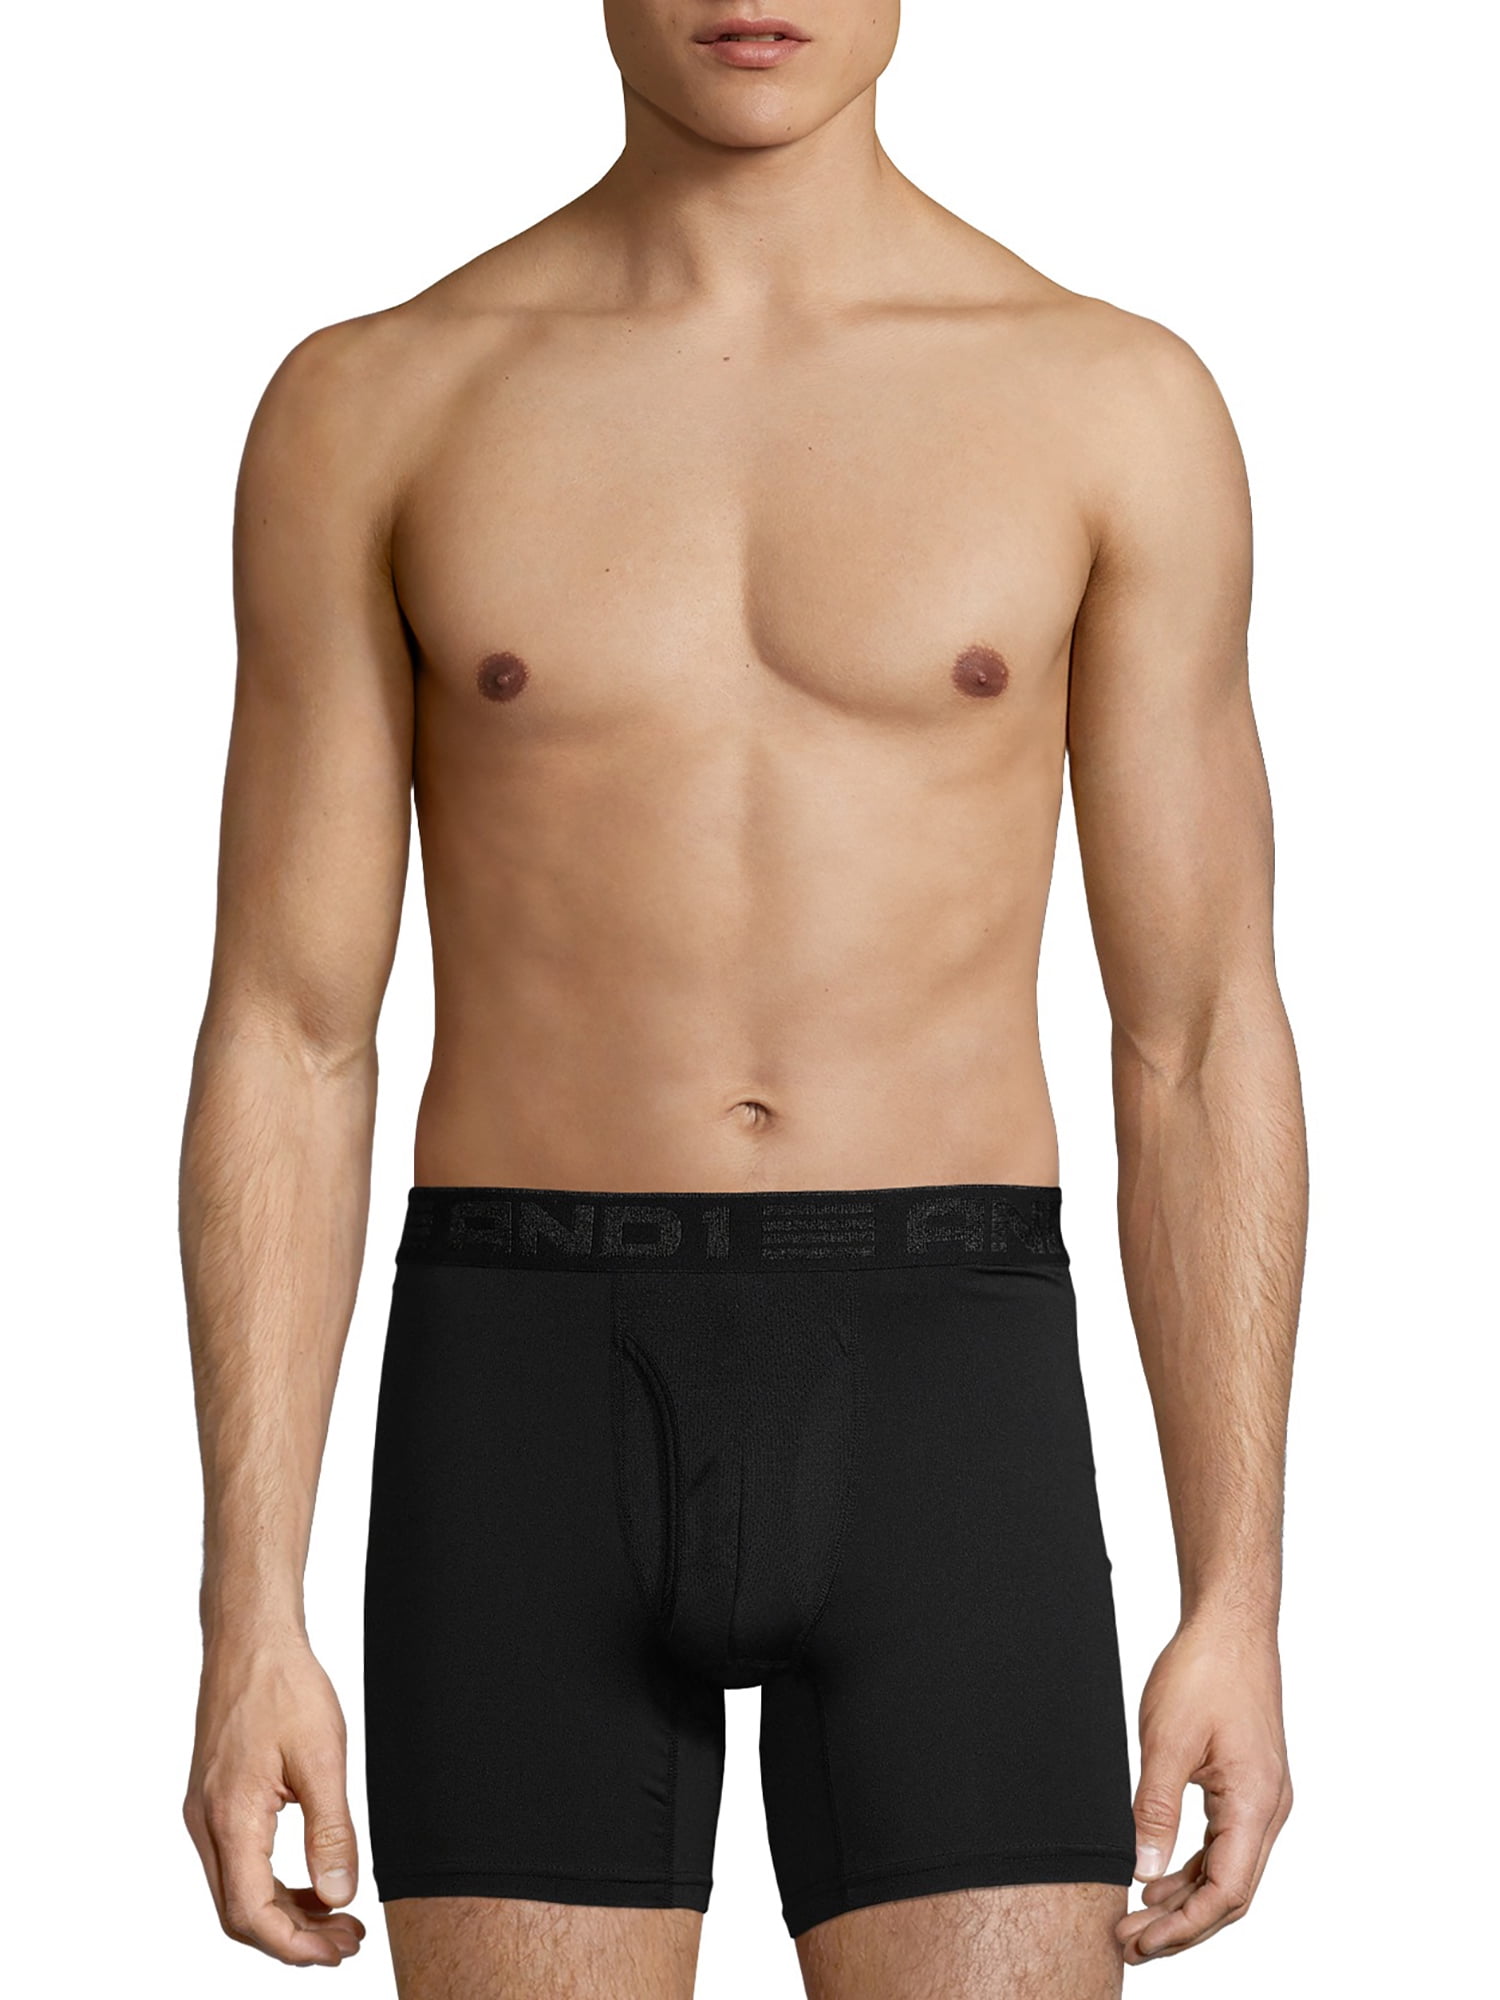 AND1 Men's Underwear Pro Platinum Boxer Briefs, 6 Pack, 6"